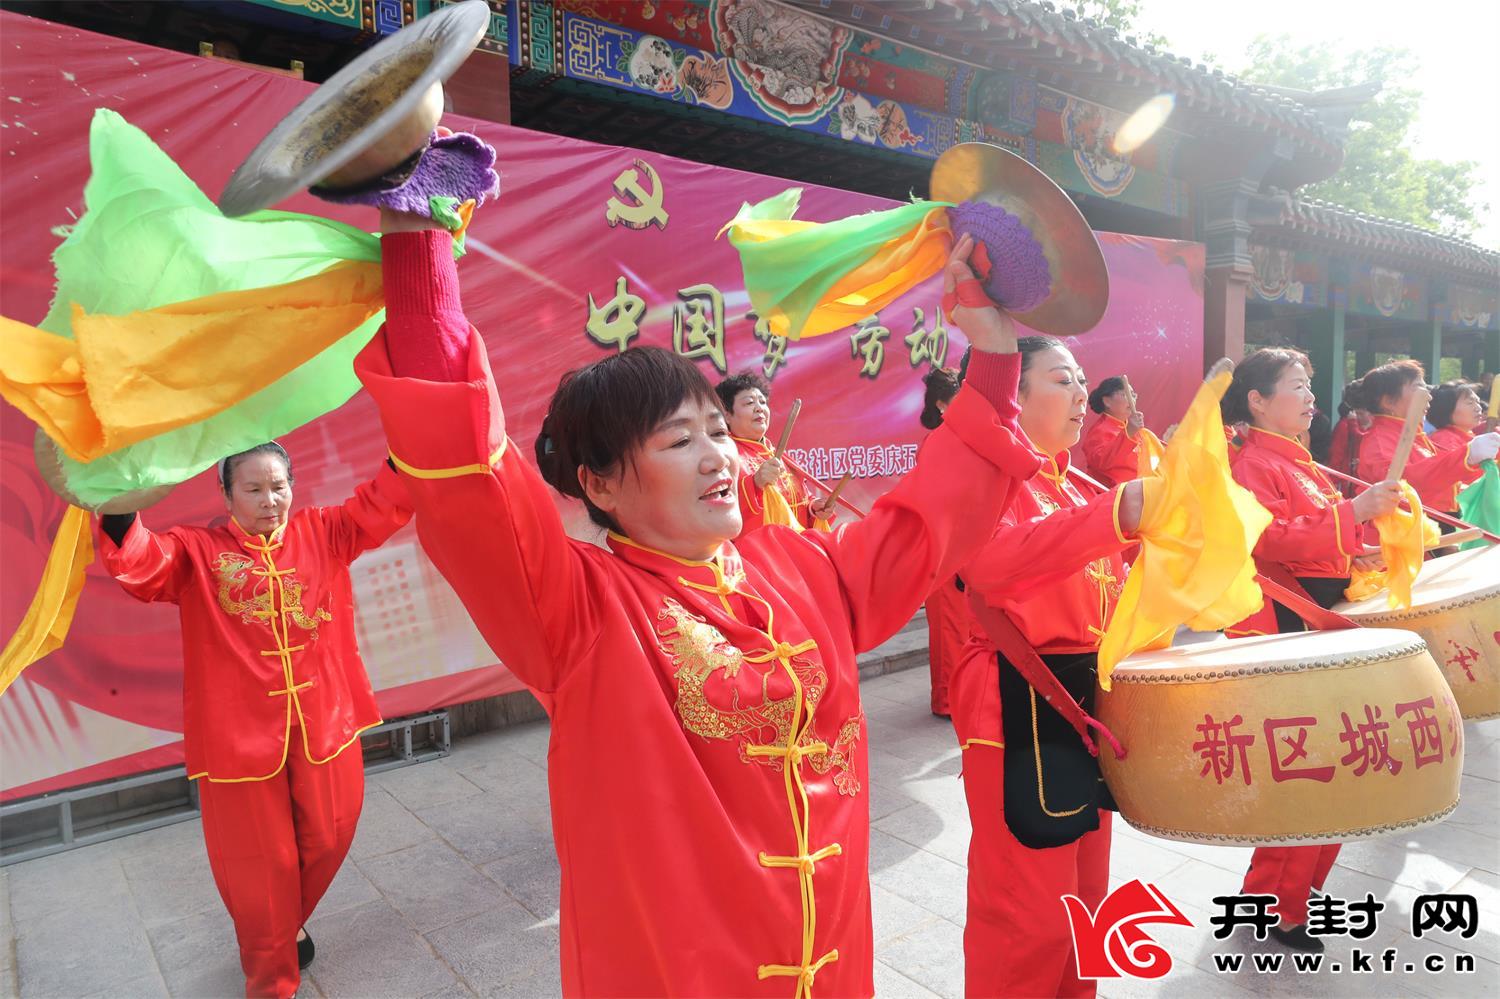  “五一”国际劳动节到来之际，宋城路社区举办中国梦 劳动美为主题的庆“五一”文艺演出，丰富社区群众文化生活，营造欢乐祥和的节日气氛，向建党100周年献礼。全 媒体记者 李俊生4月29日摄